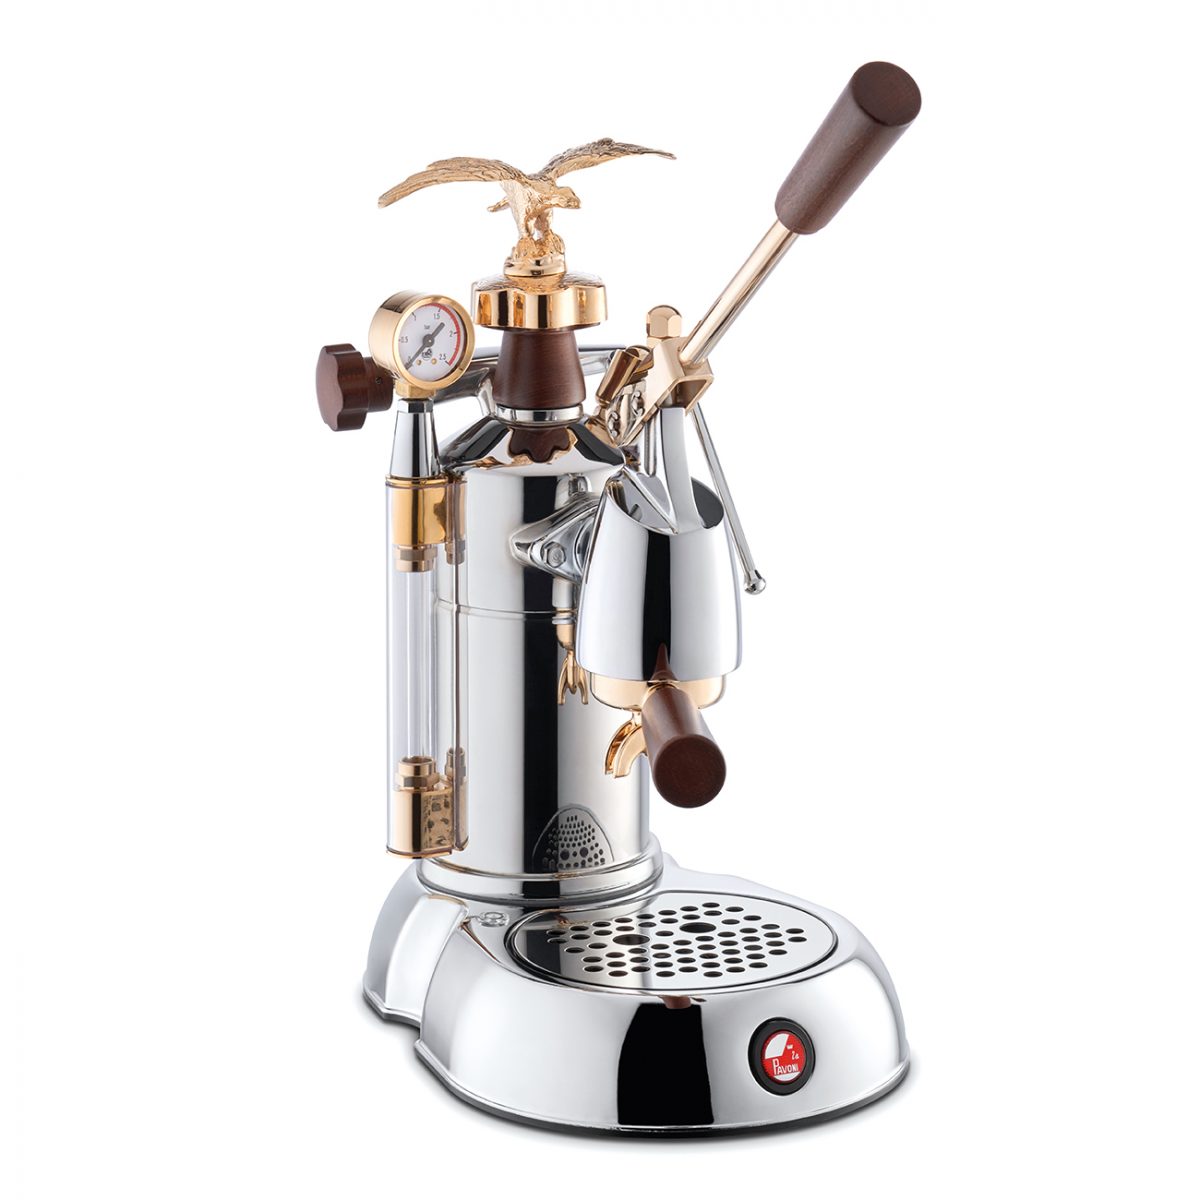 La Pavoni Coffee Machine Espresso Expo 2015